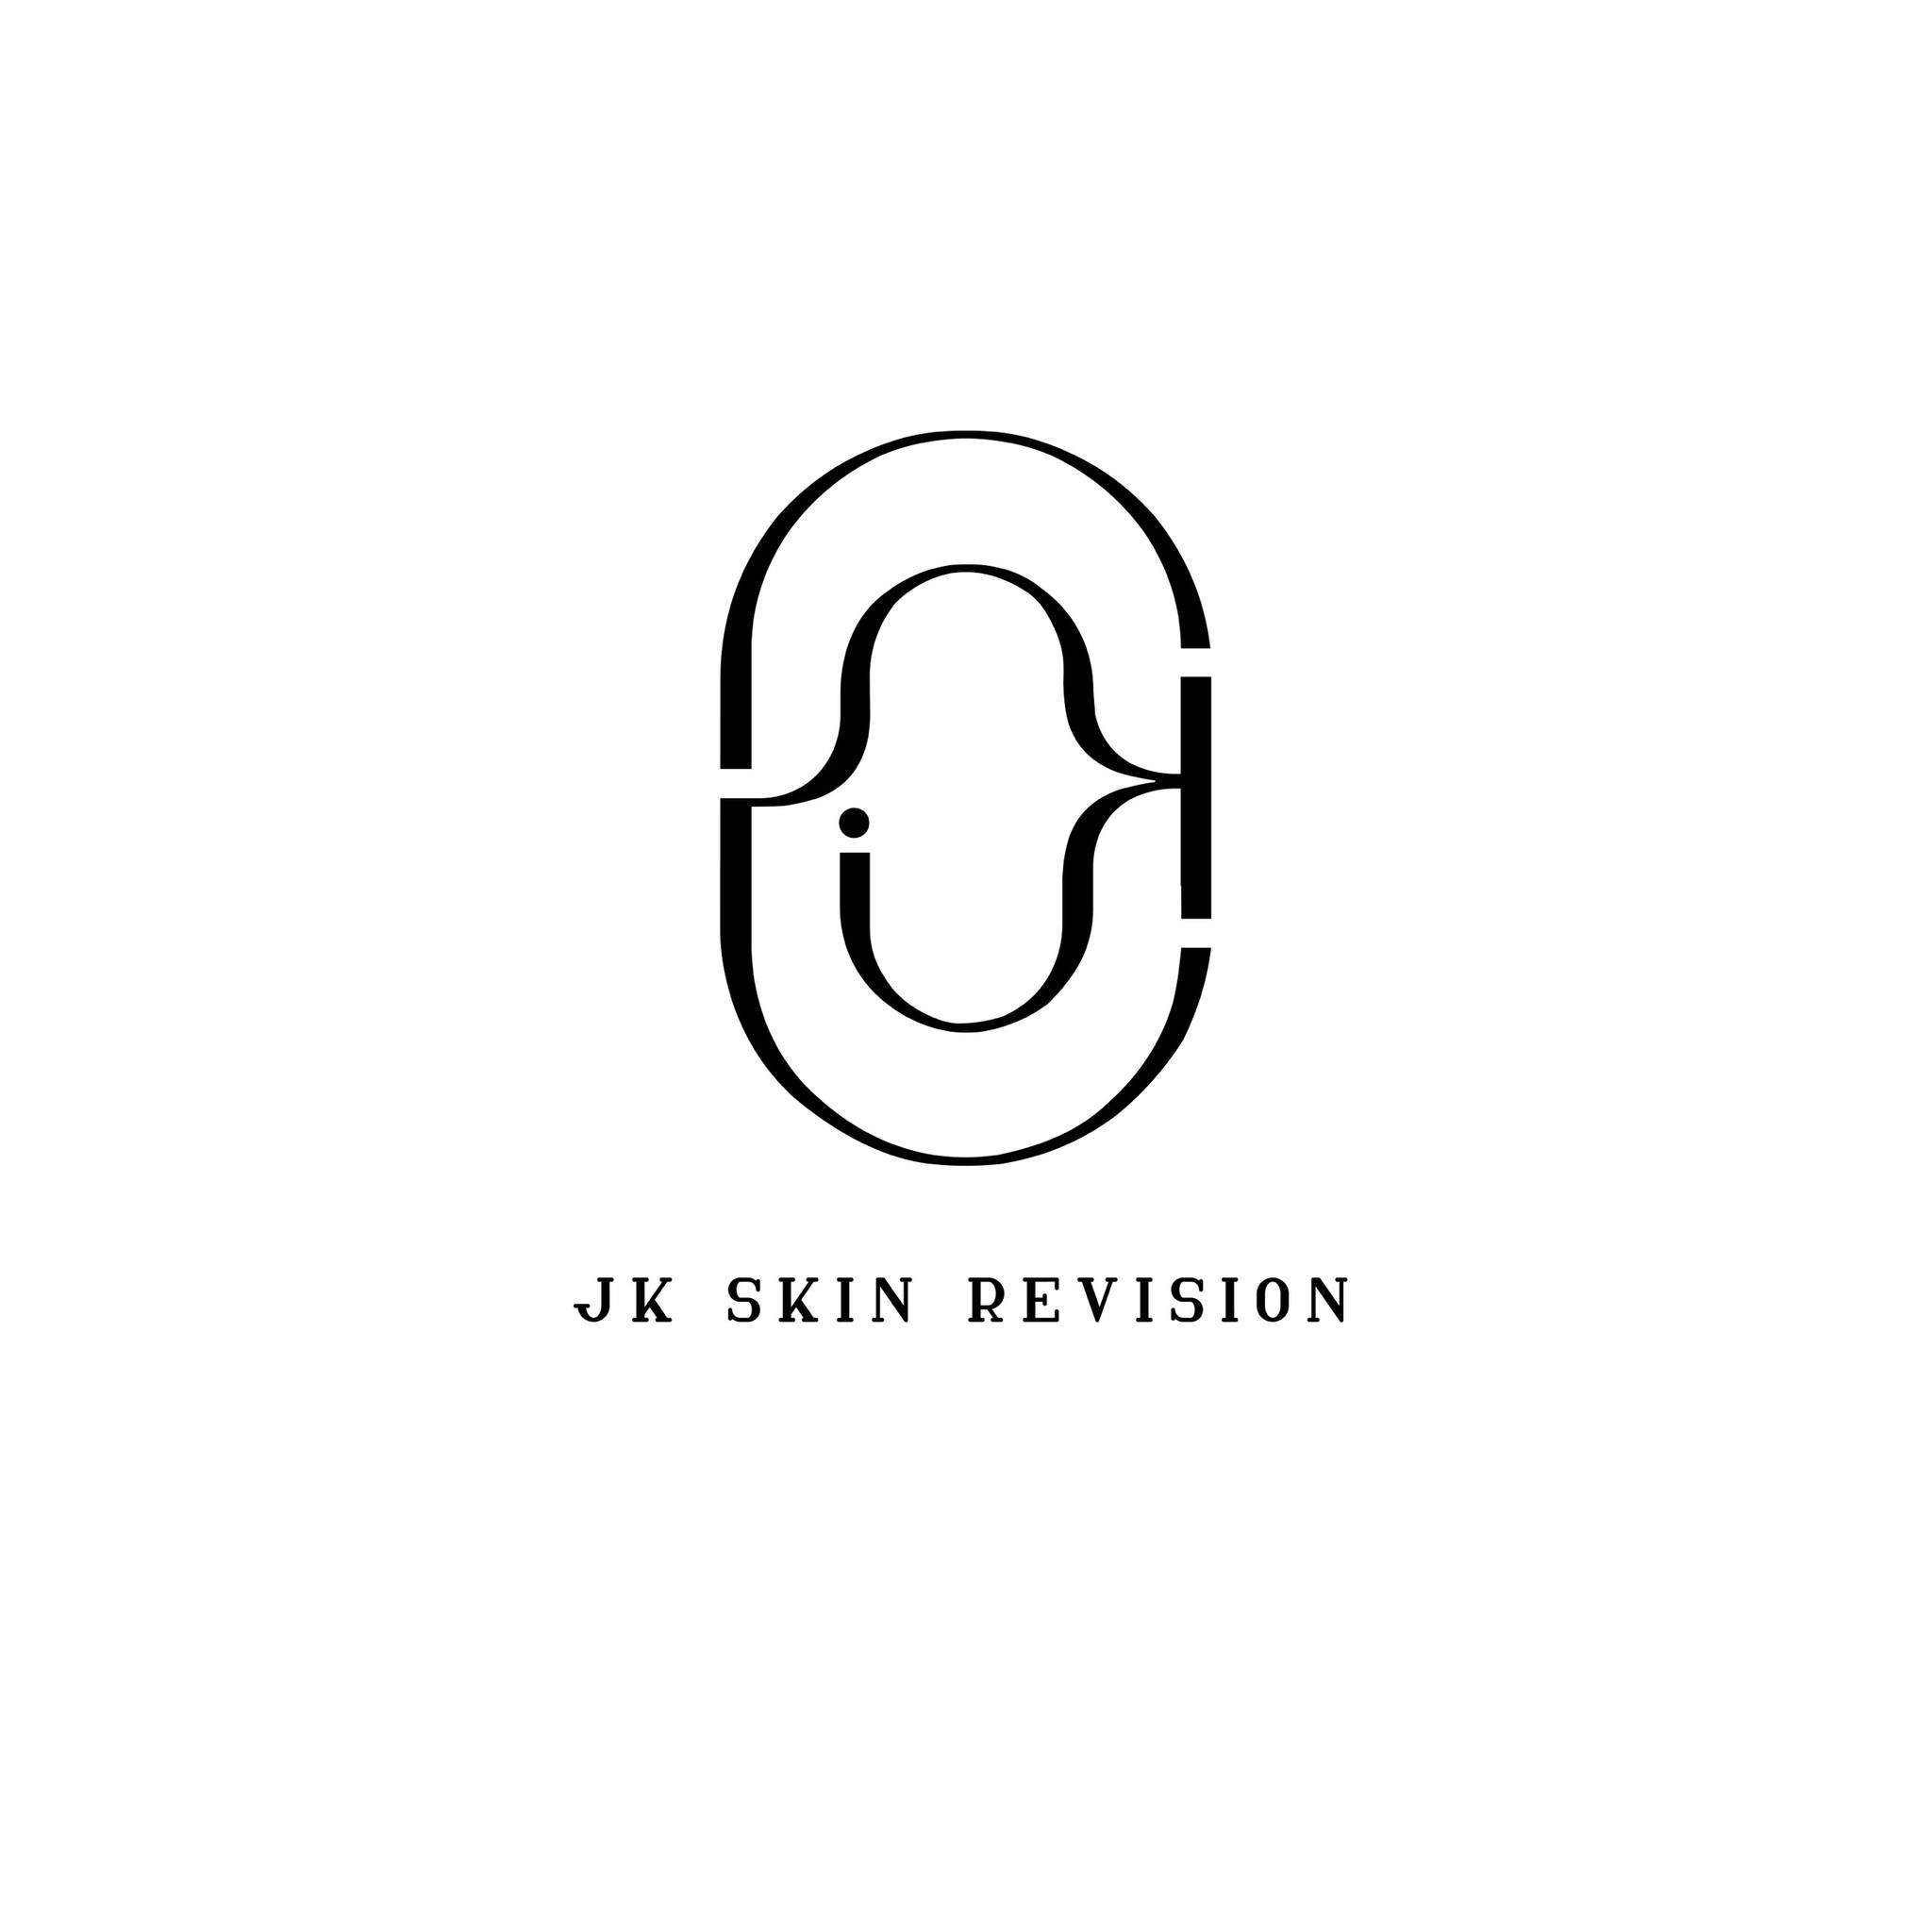 JK Skin Revision